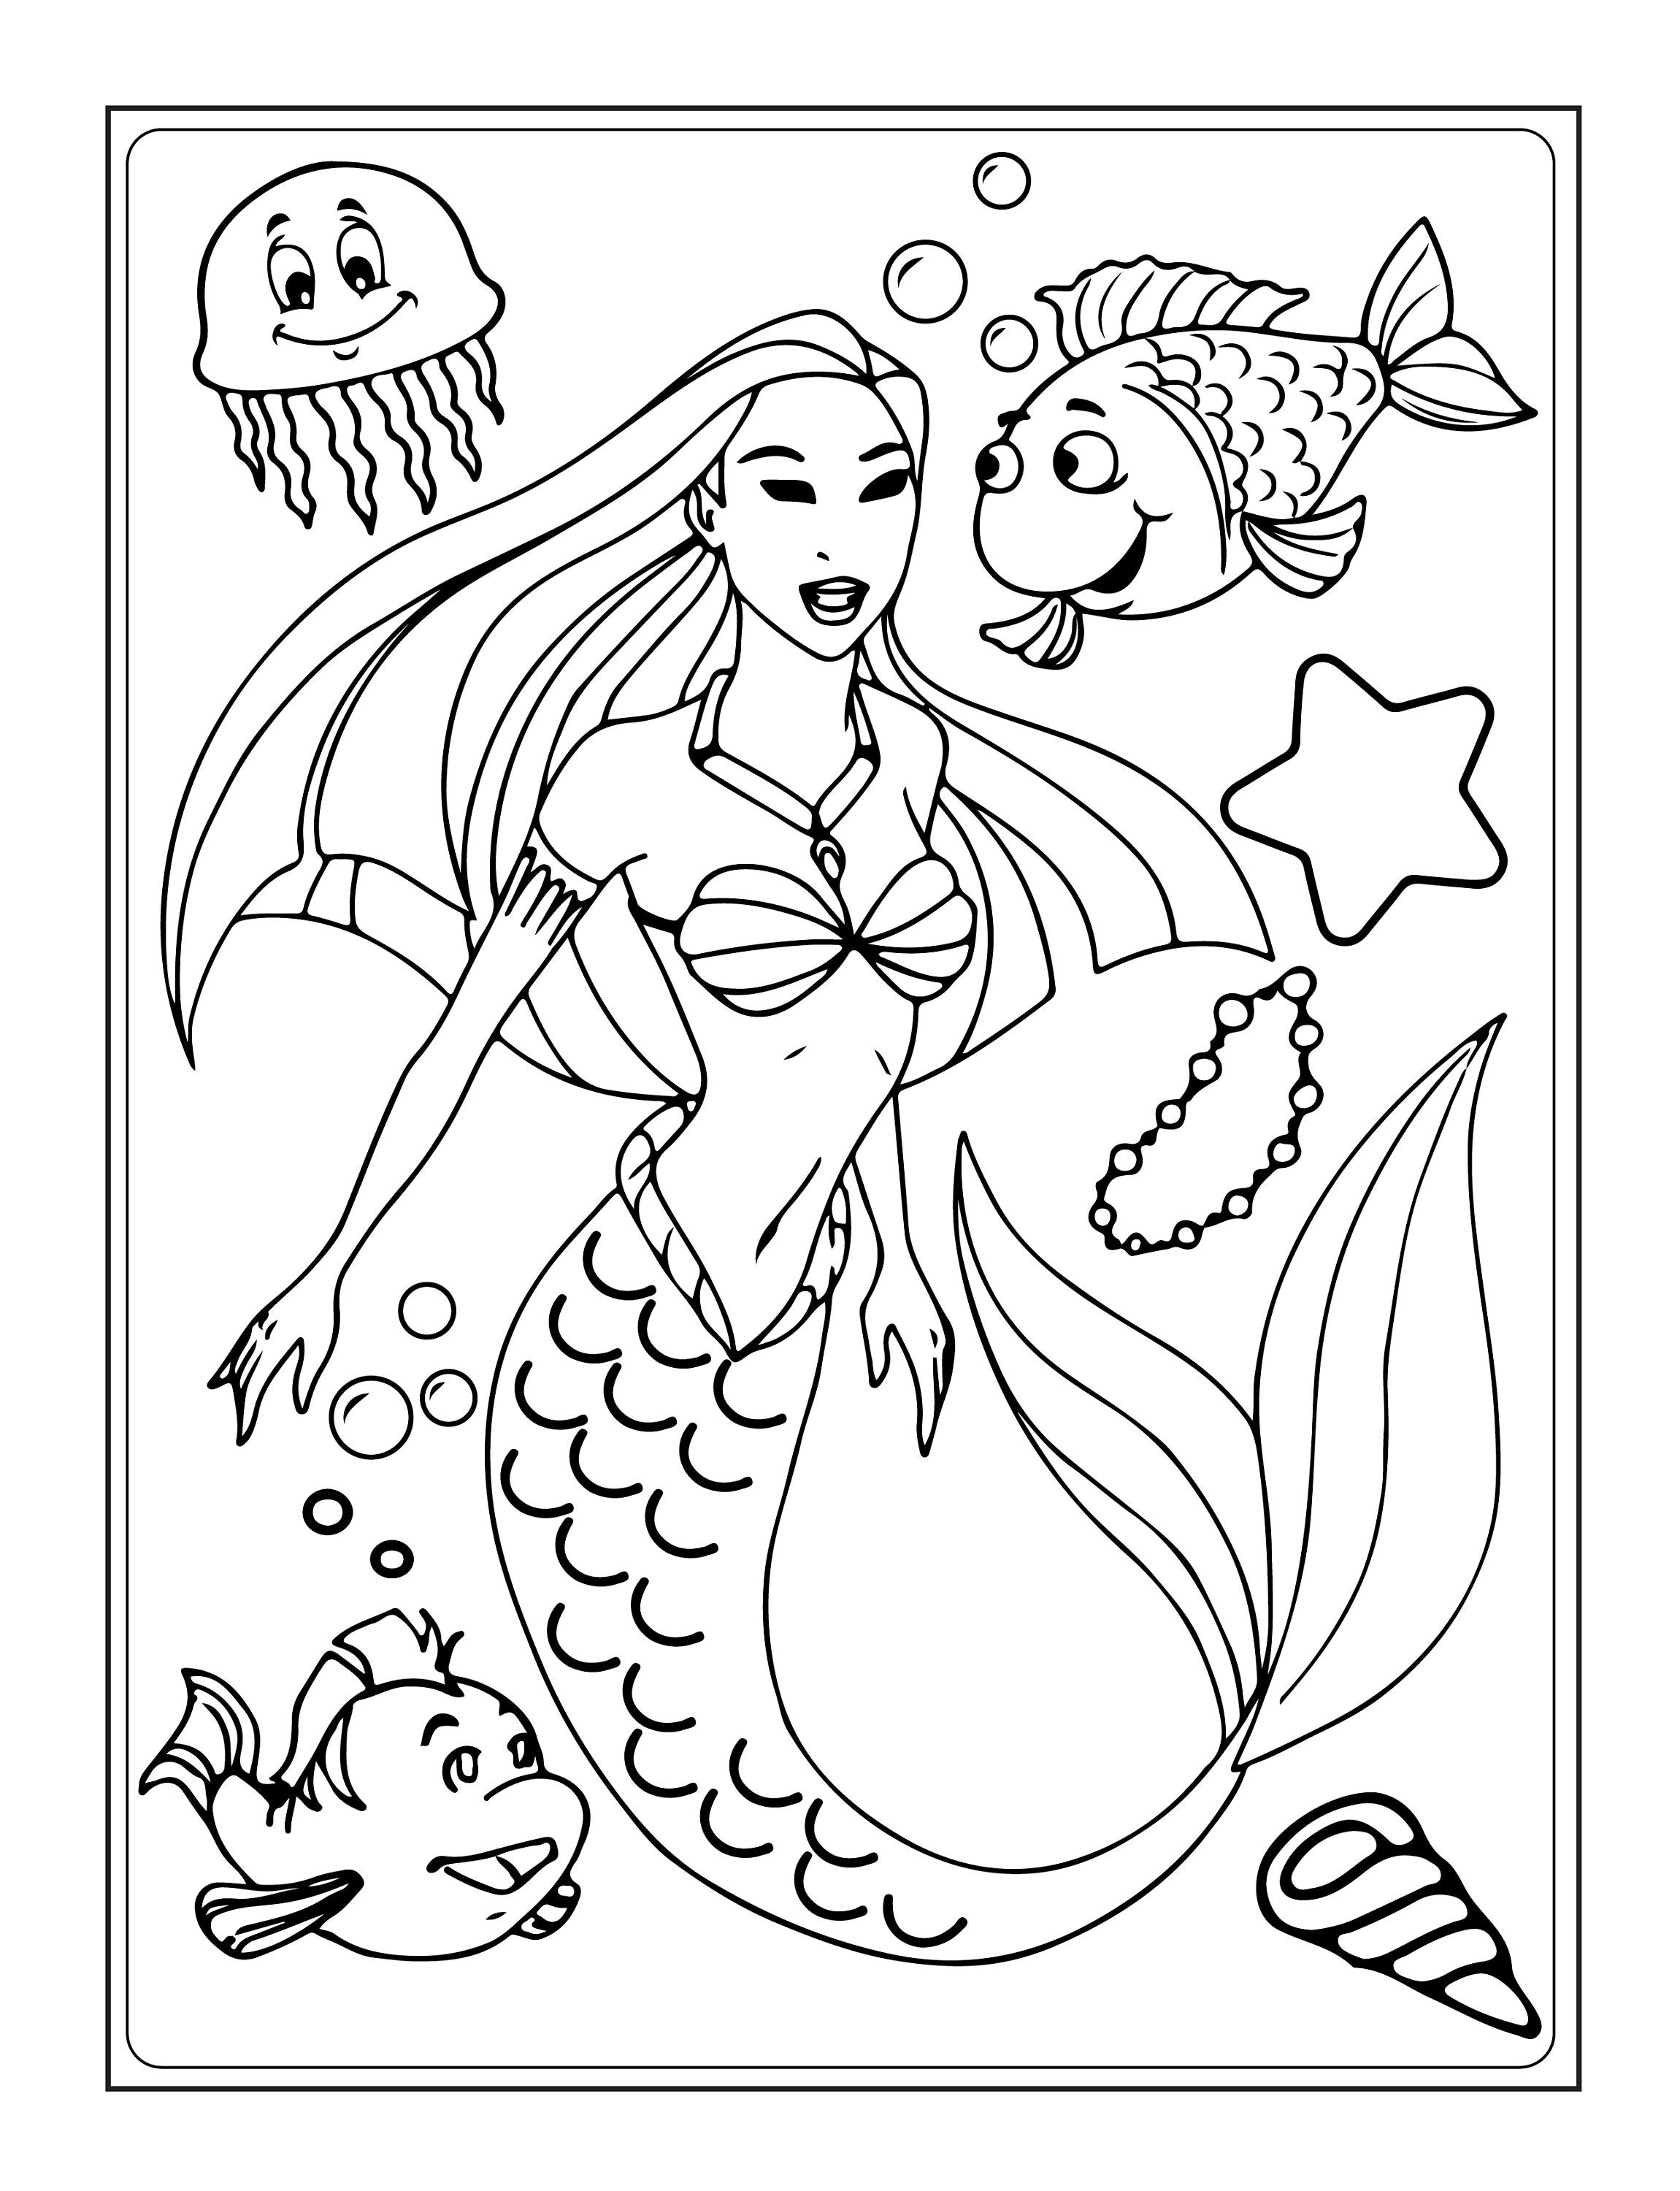 Binky The Mermaid Coloring Book